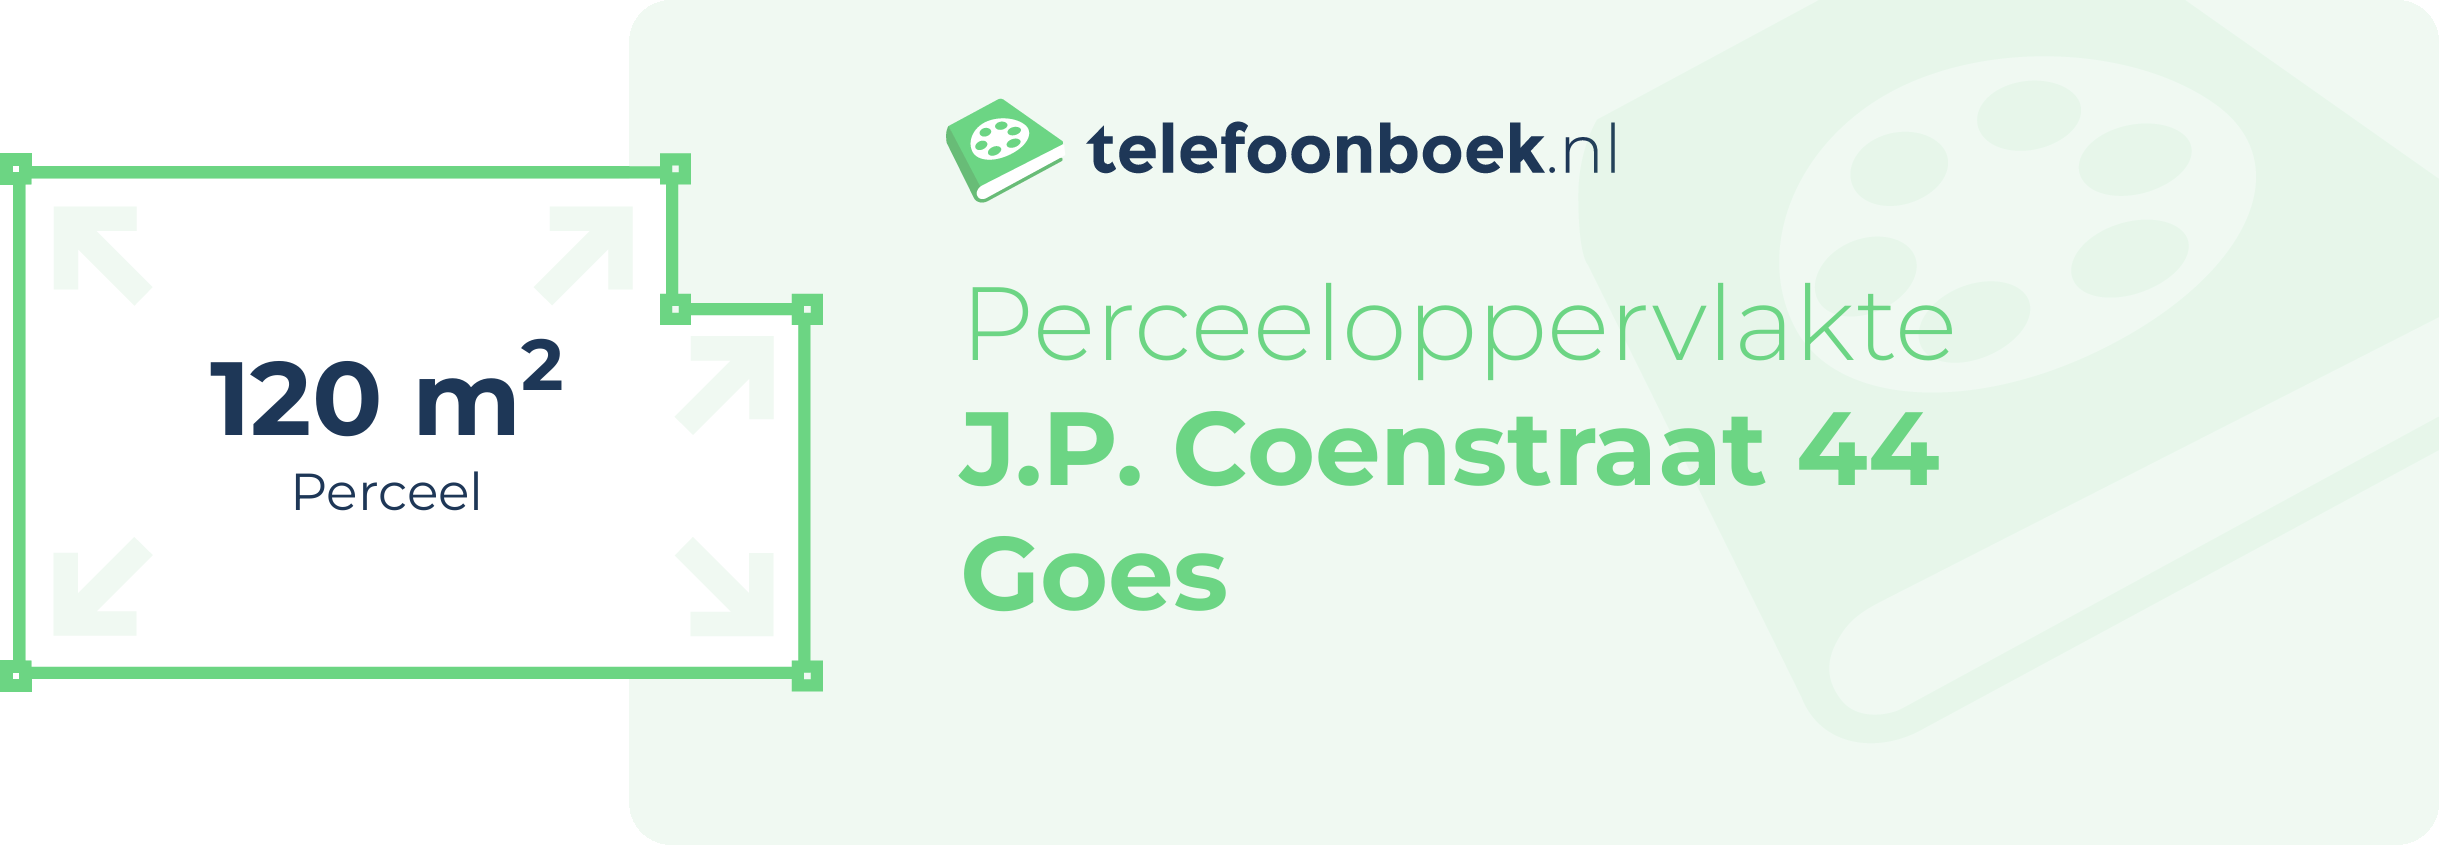 Perceeloppervlakte J.P. Coenstraat 44 Goes